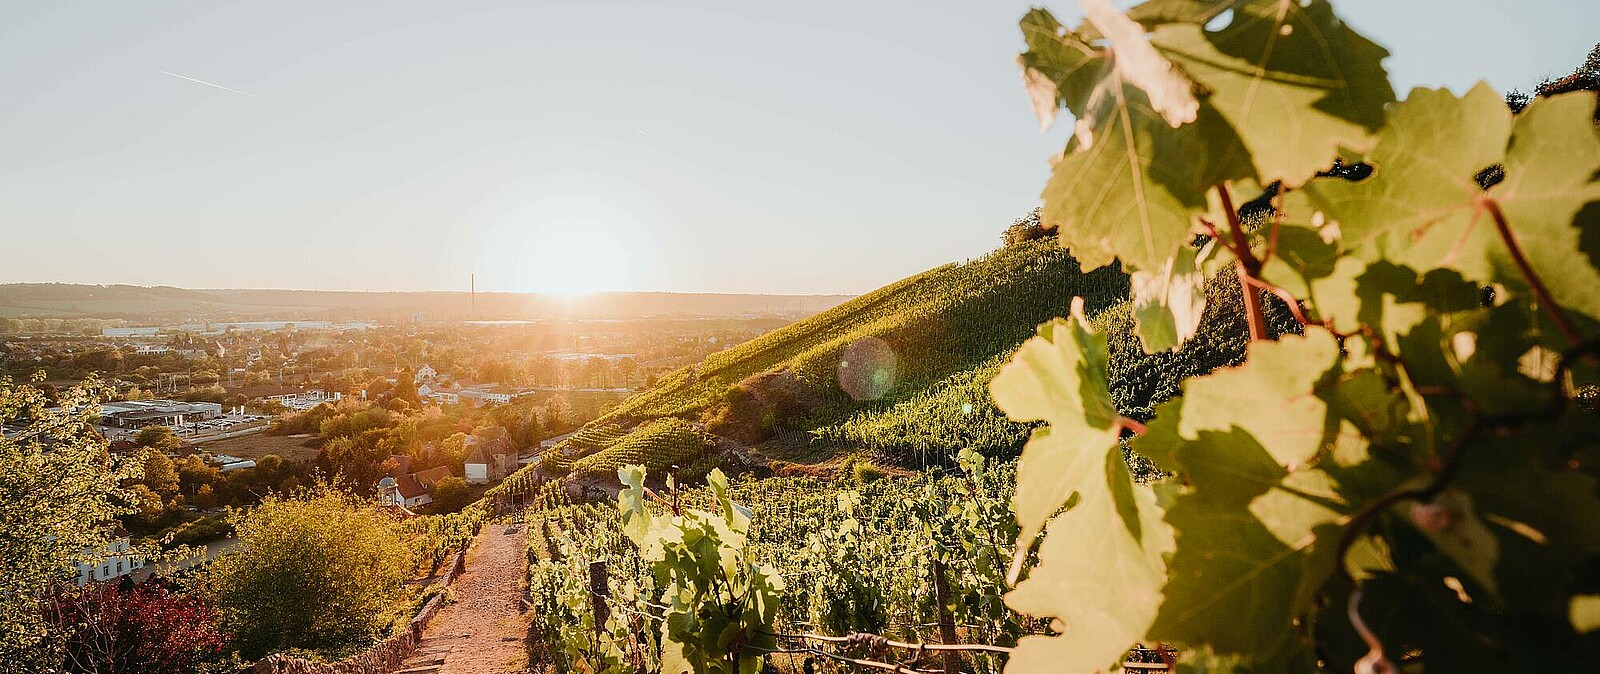 Genießen Sie mit uns eine genussvolle Weinwanderung in den sächsischen Weinbergen. Sächsische Weine sind Spitzenweine - verkosten Sie in vollen Zügen